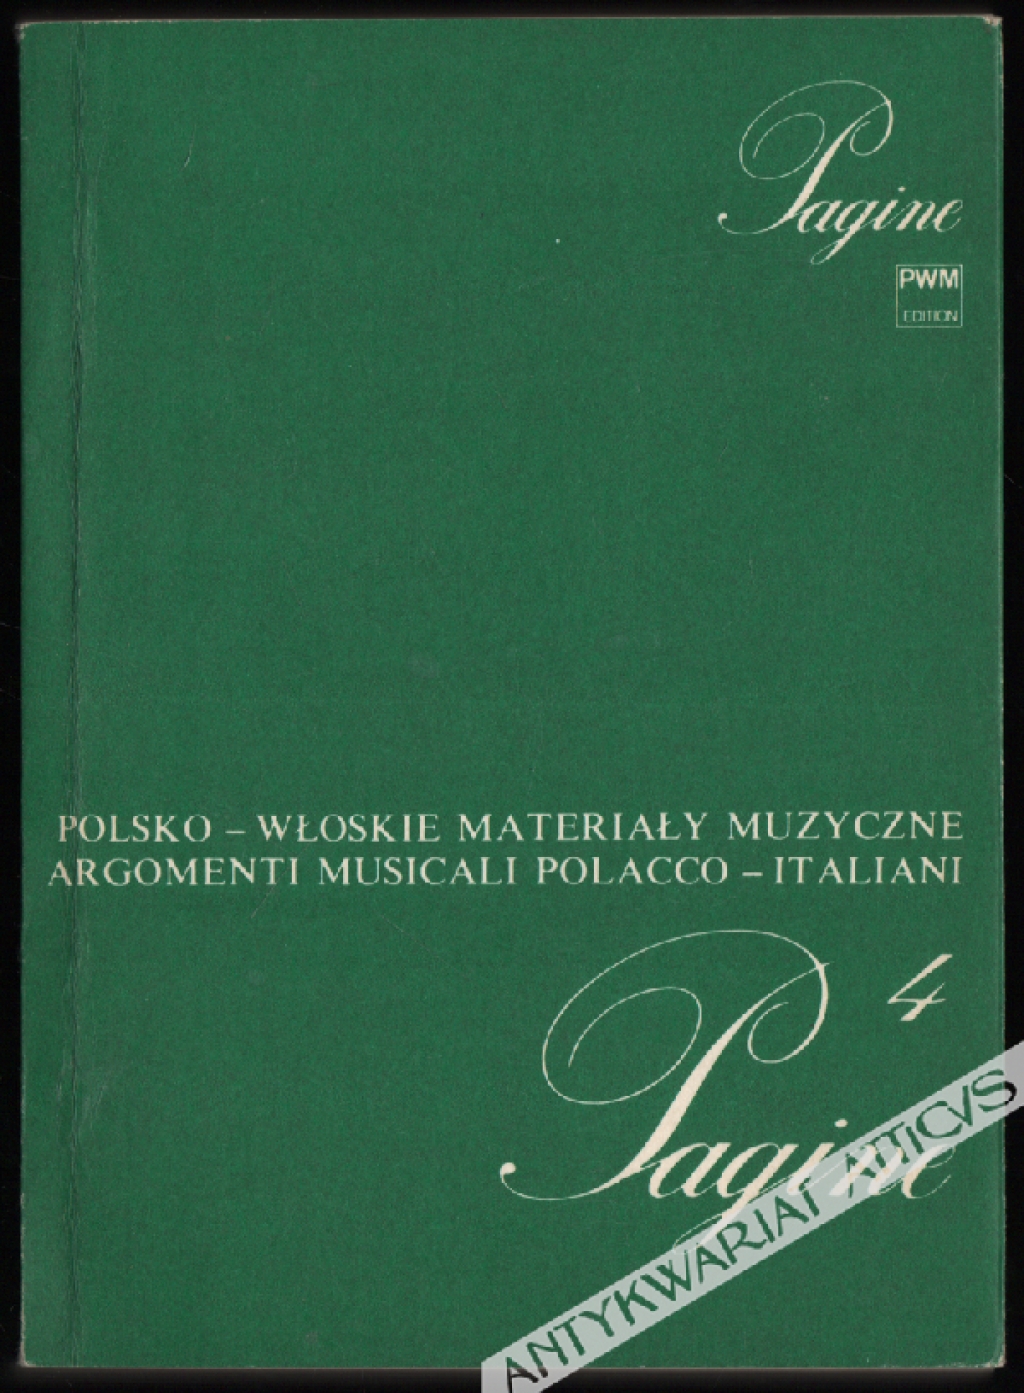 Pagine 4: Polsko-wloskie materiały muzyczne Argomenti musicali polacco-italiani